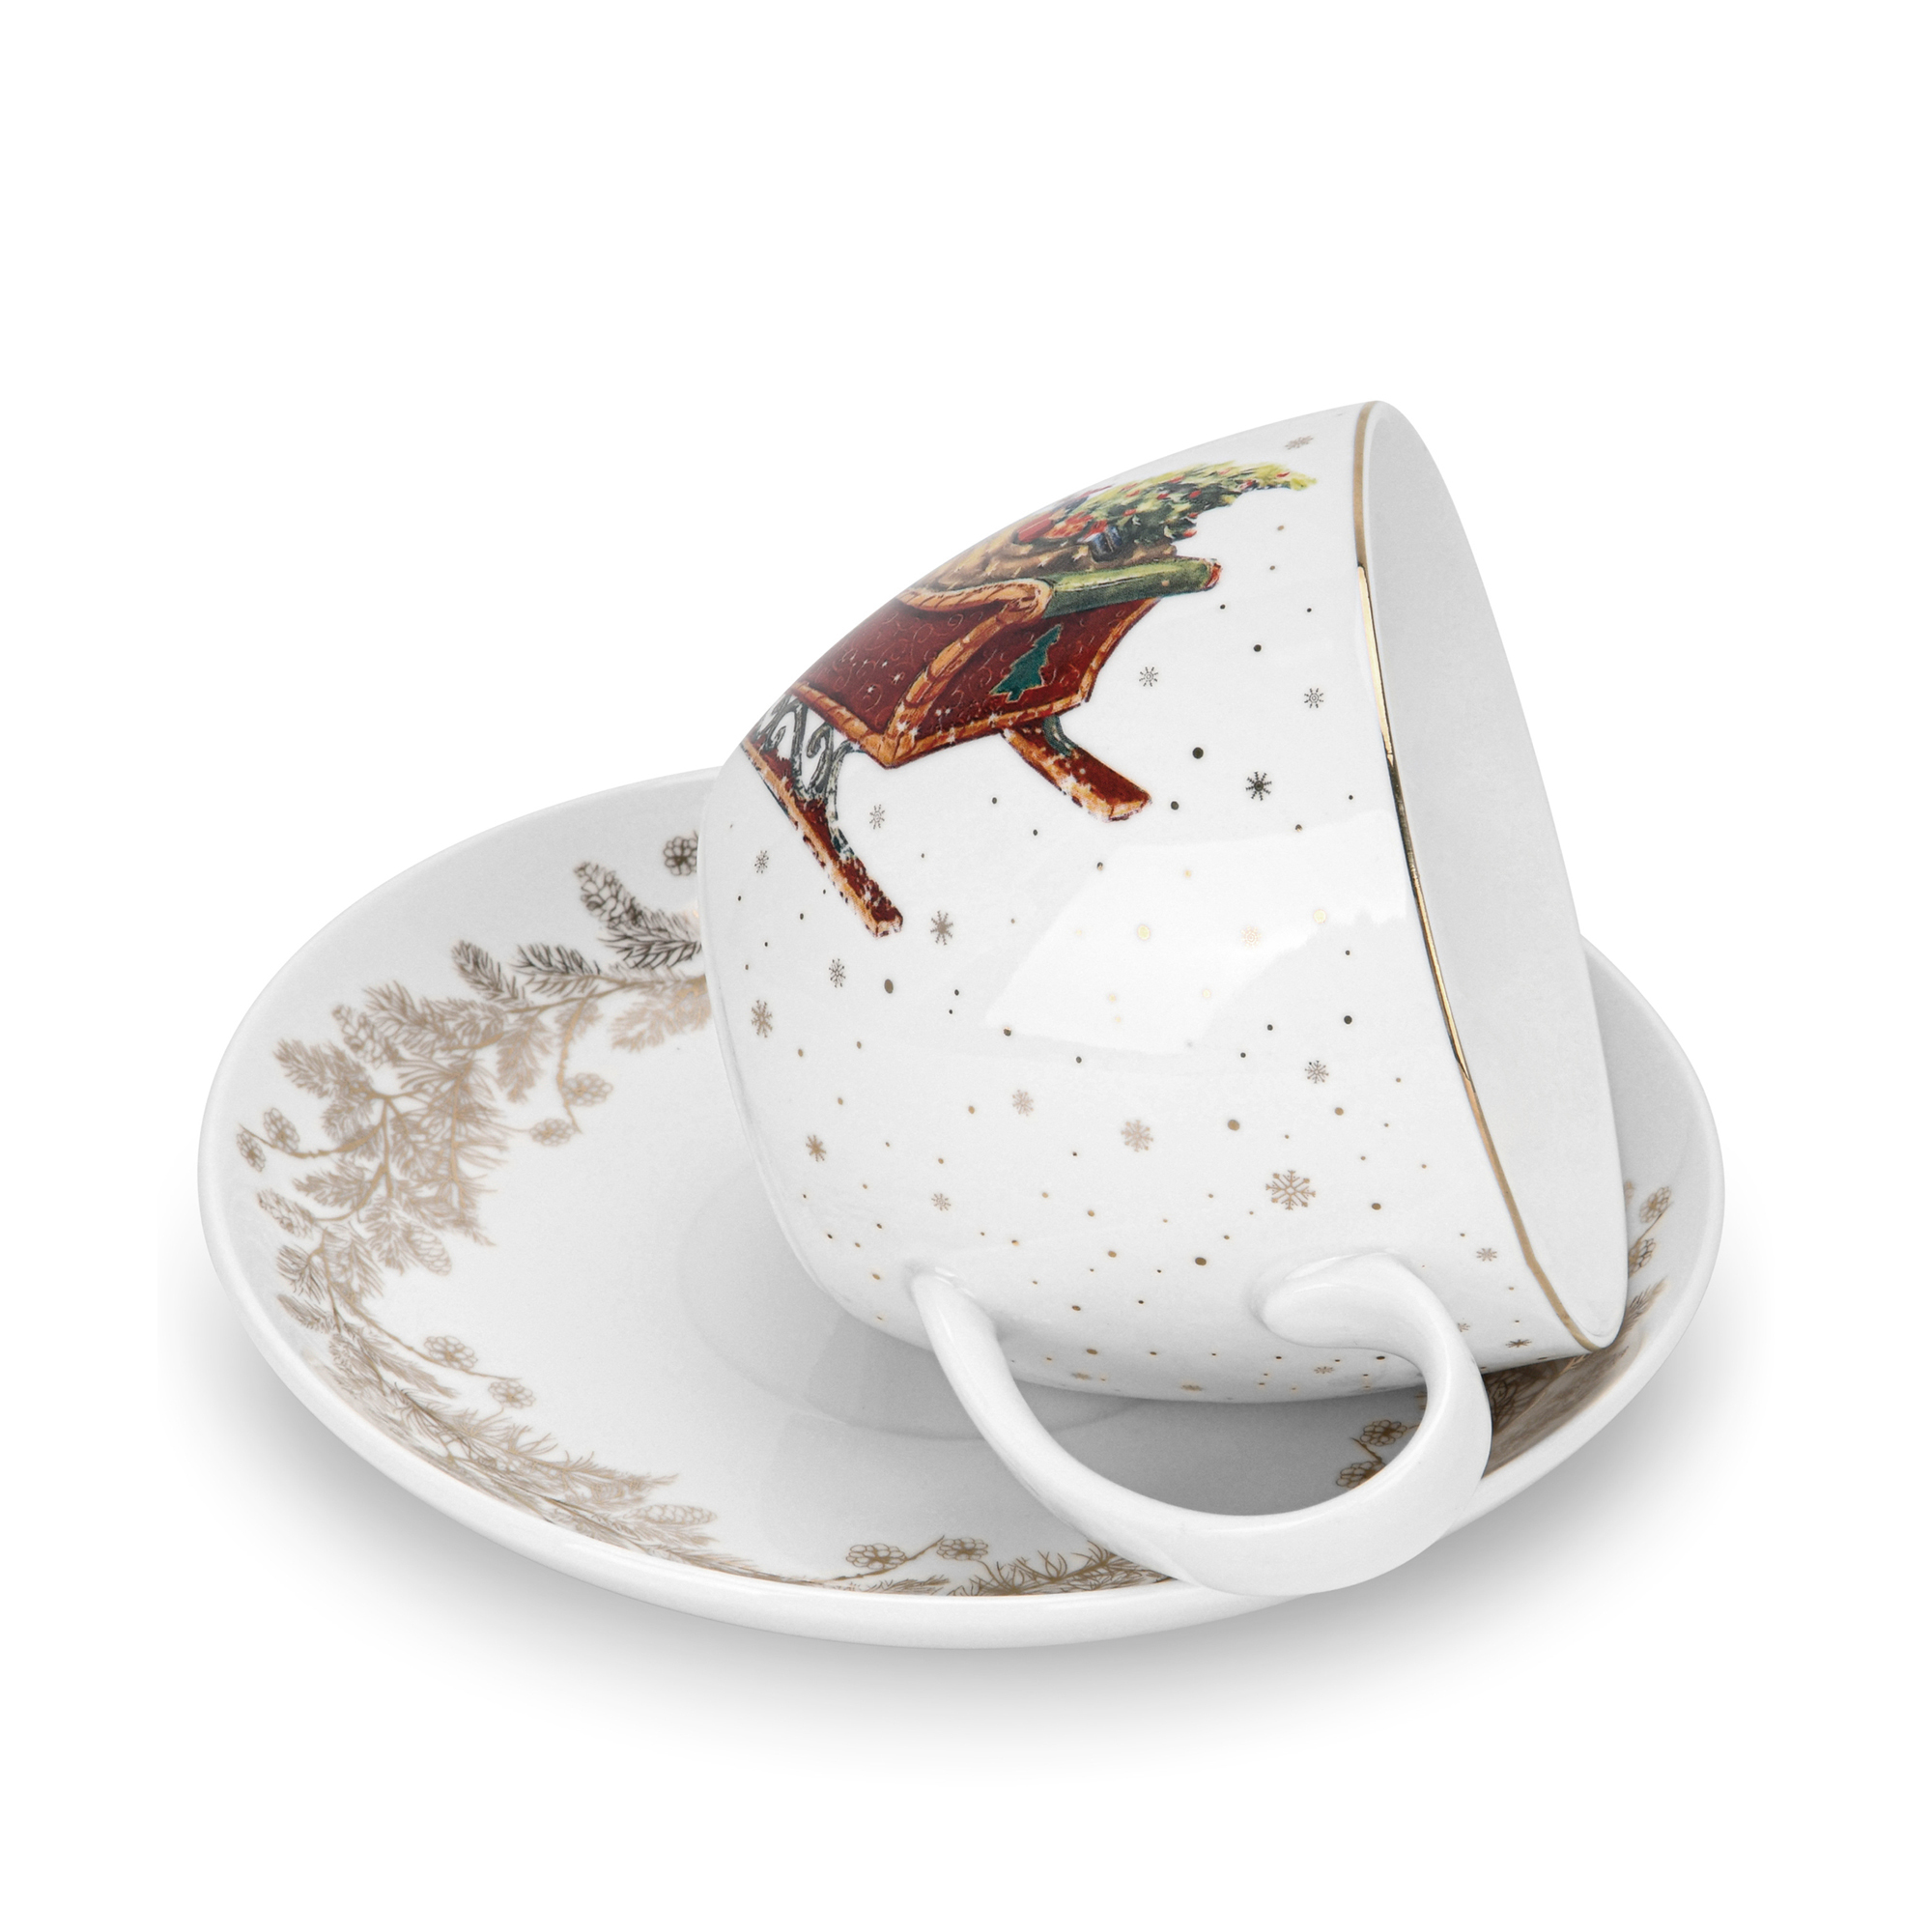 Tējas tasīte ar apakštasi 400 ml Christmas (porcelāns)